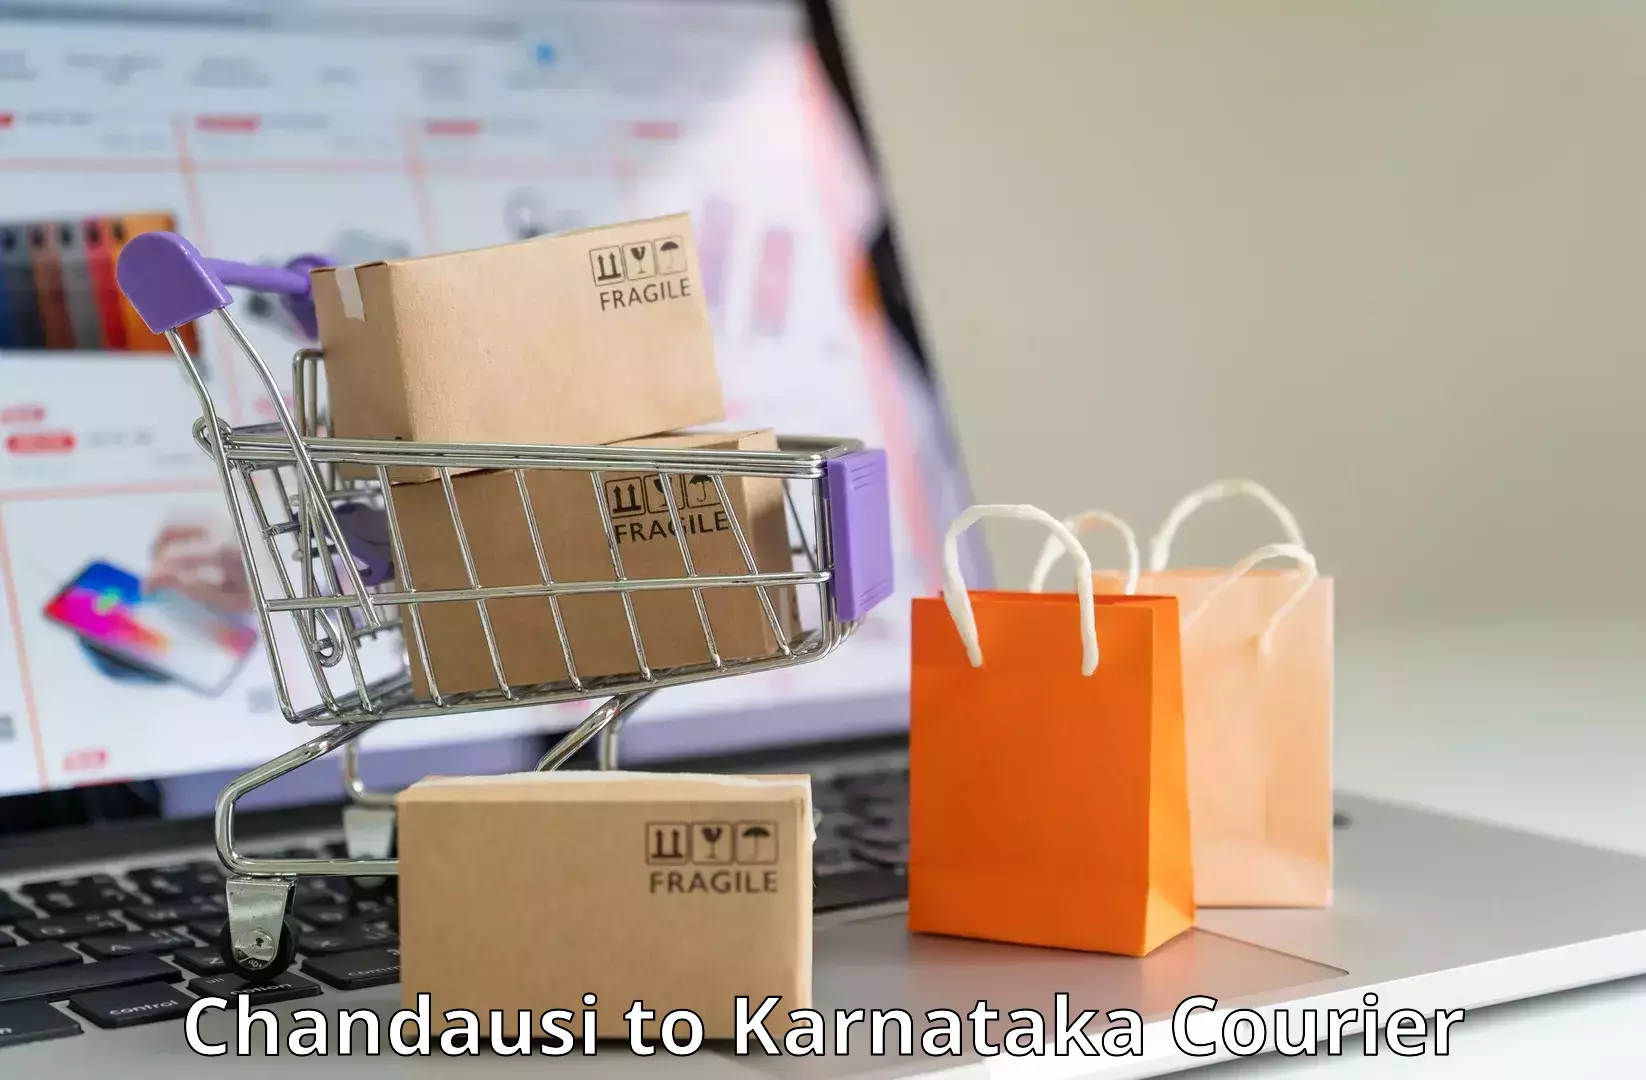 Business logistics support Chandausi to Karnataka